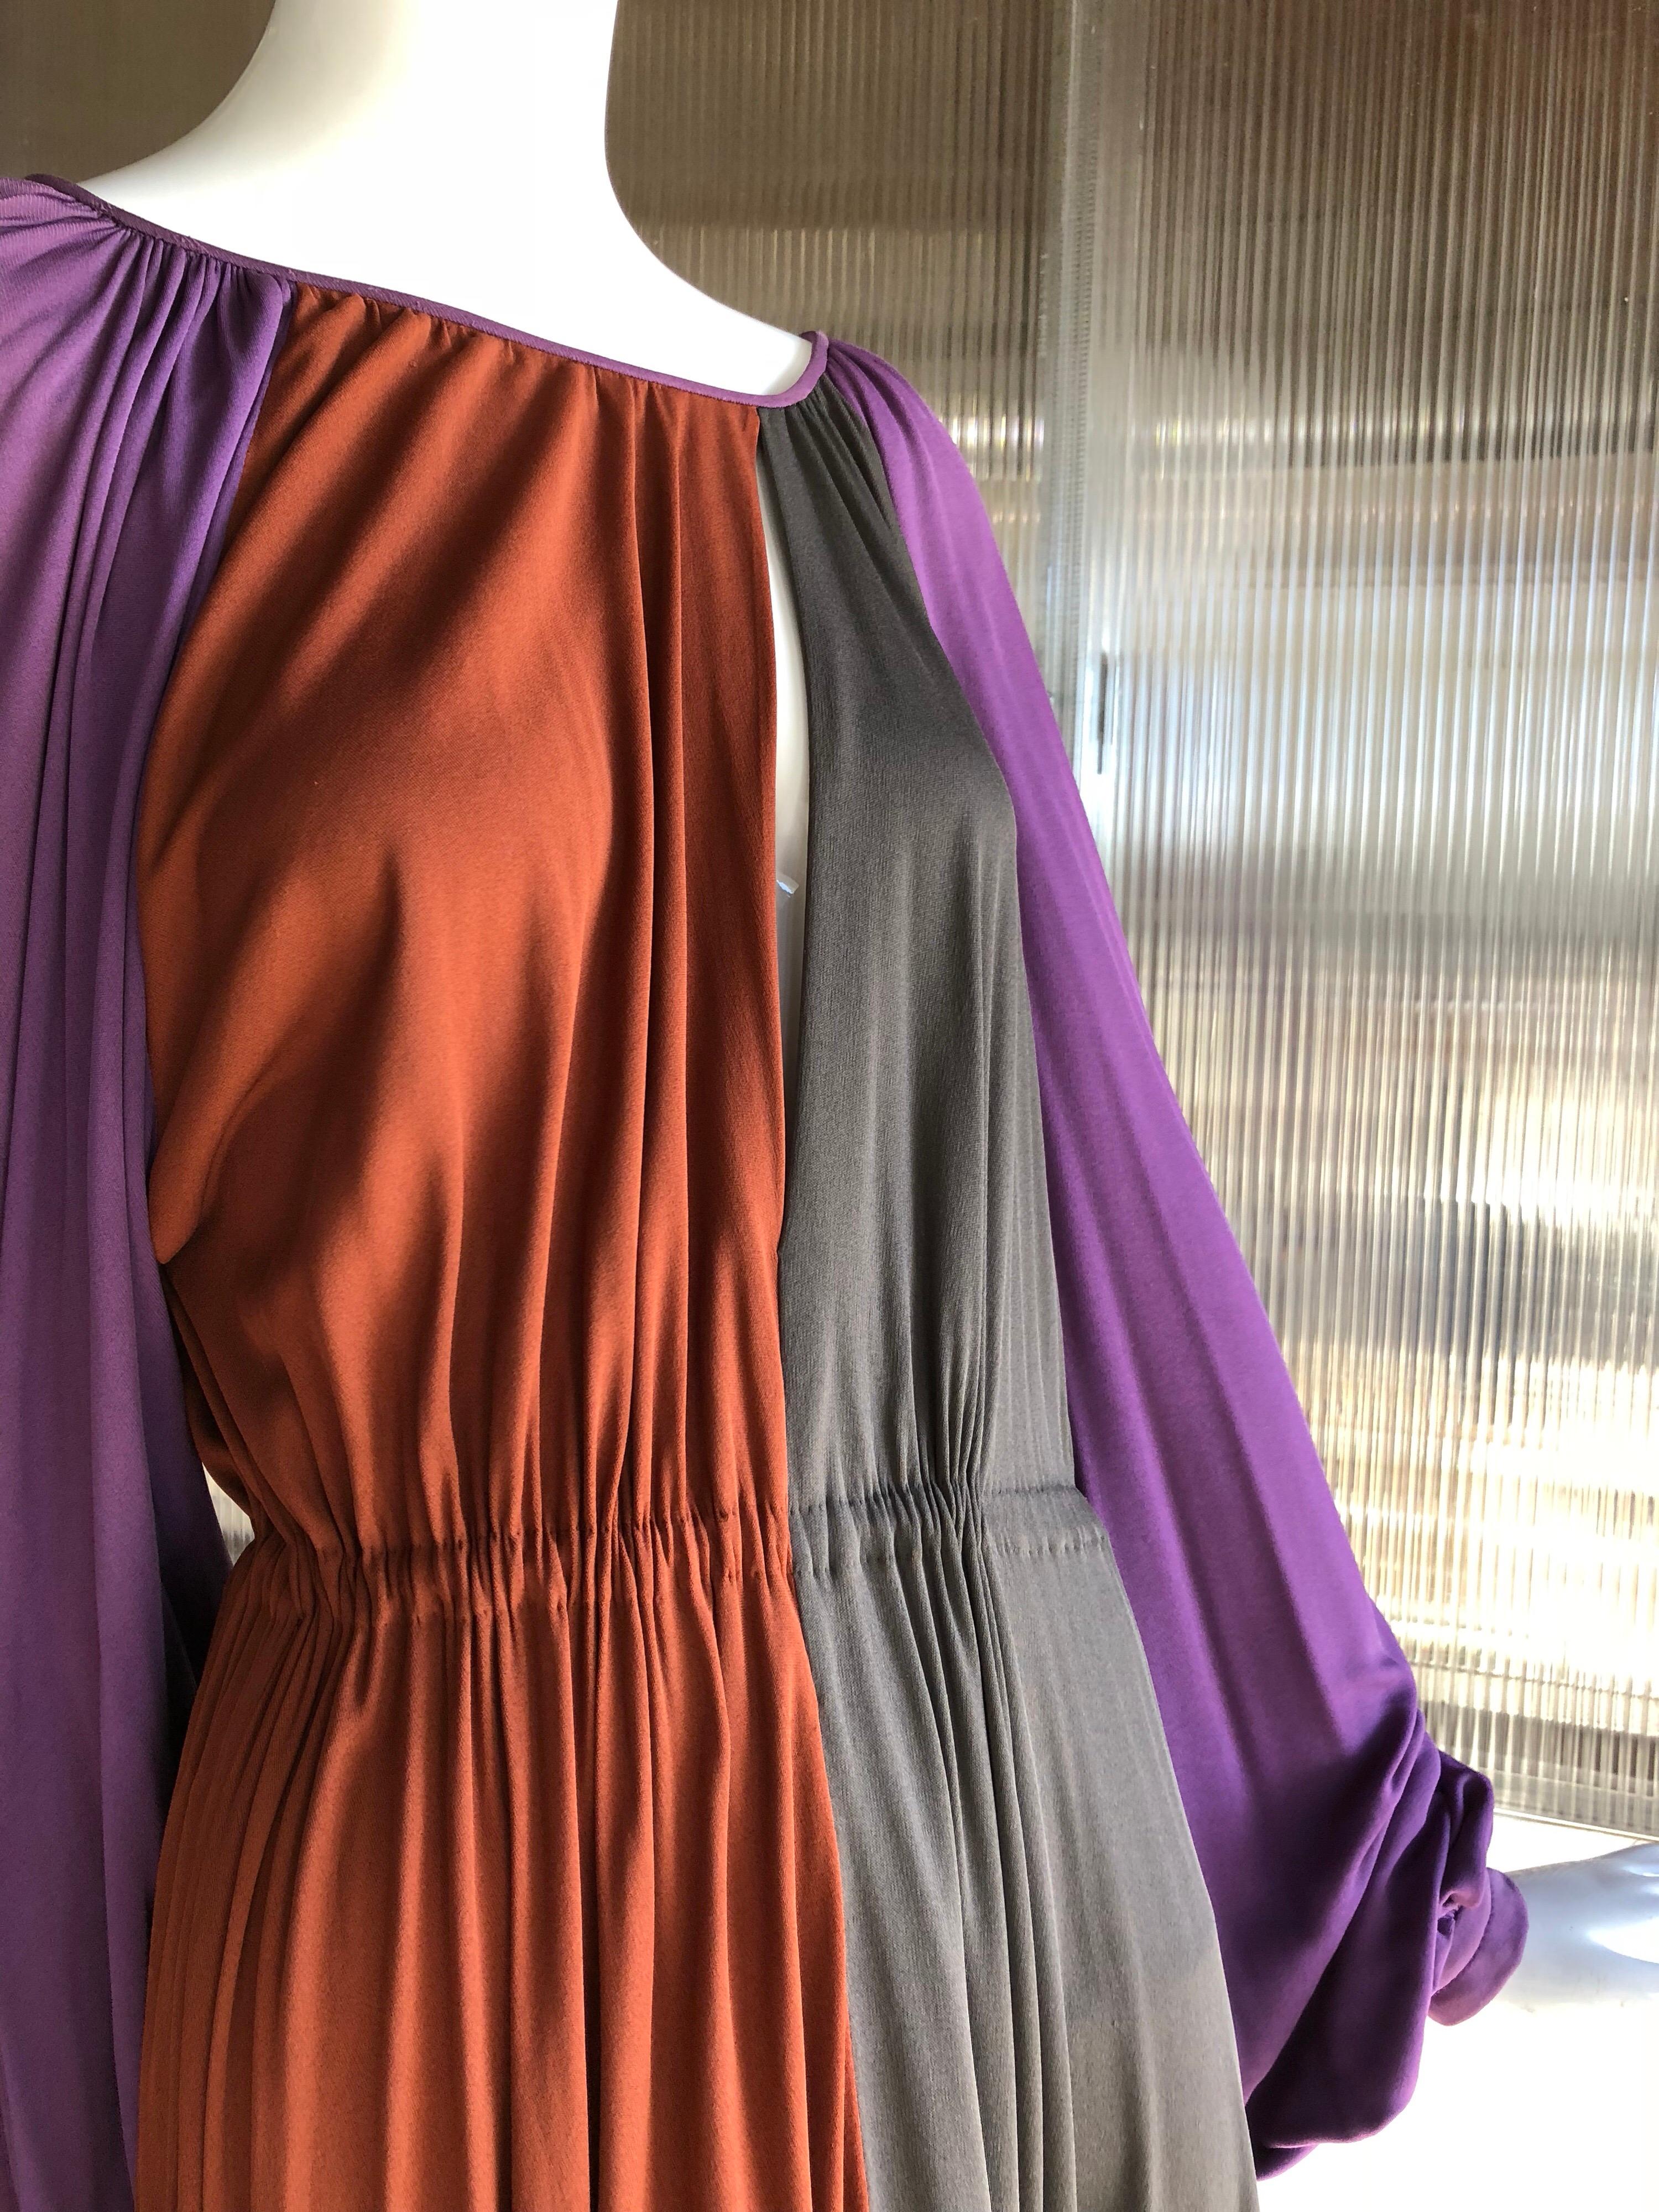 james Galanos stromlinienförmiges und elegant drapiertes wadenlanges Disco-Kleid aus Seidenjersey aus den 1970er Jahren in den Farben Violett, Rost und Taupe im Farbblock. Der asymmetrische Schlüssellochausschnitt veredelt dieses maßgefertigte Stück